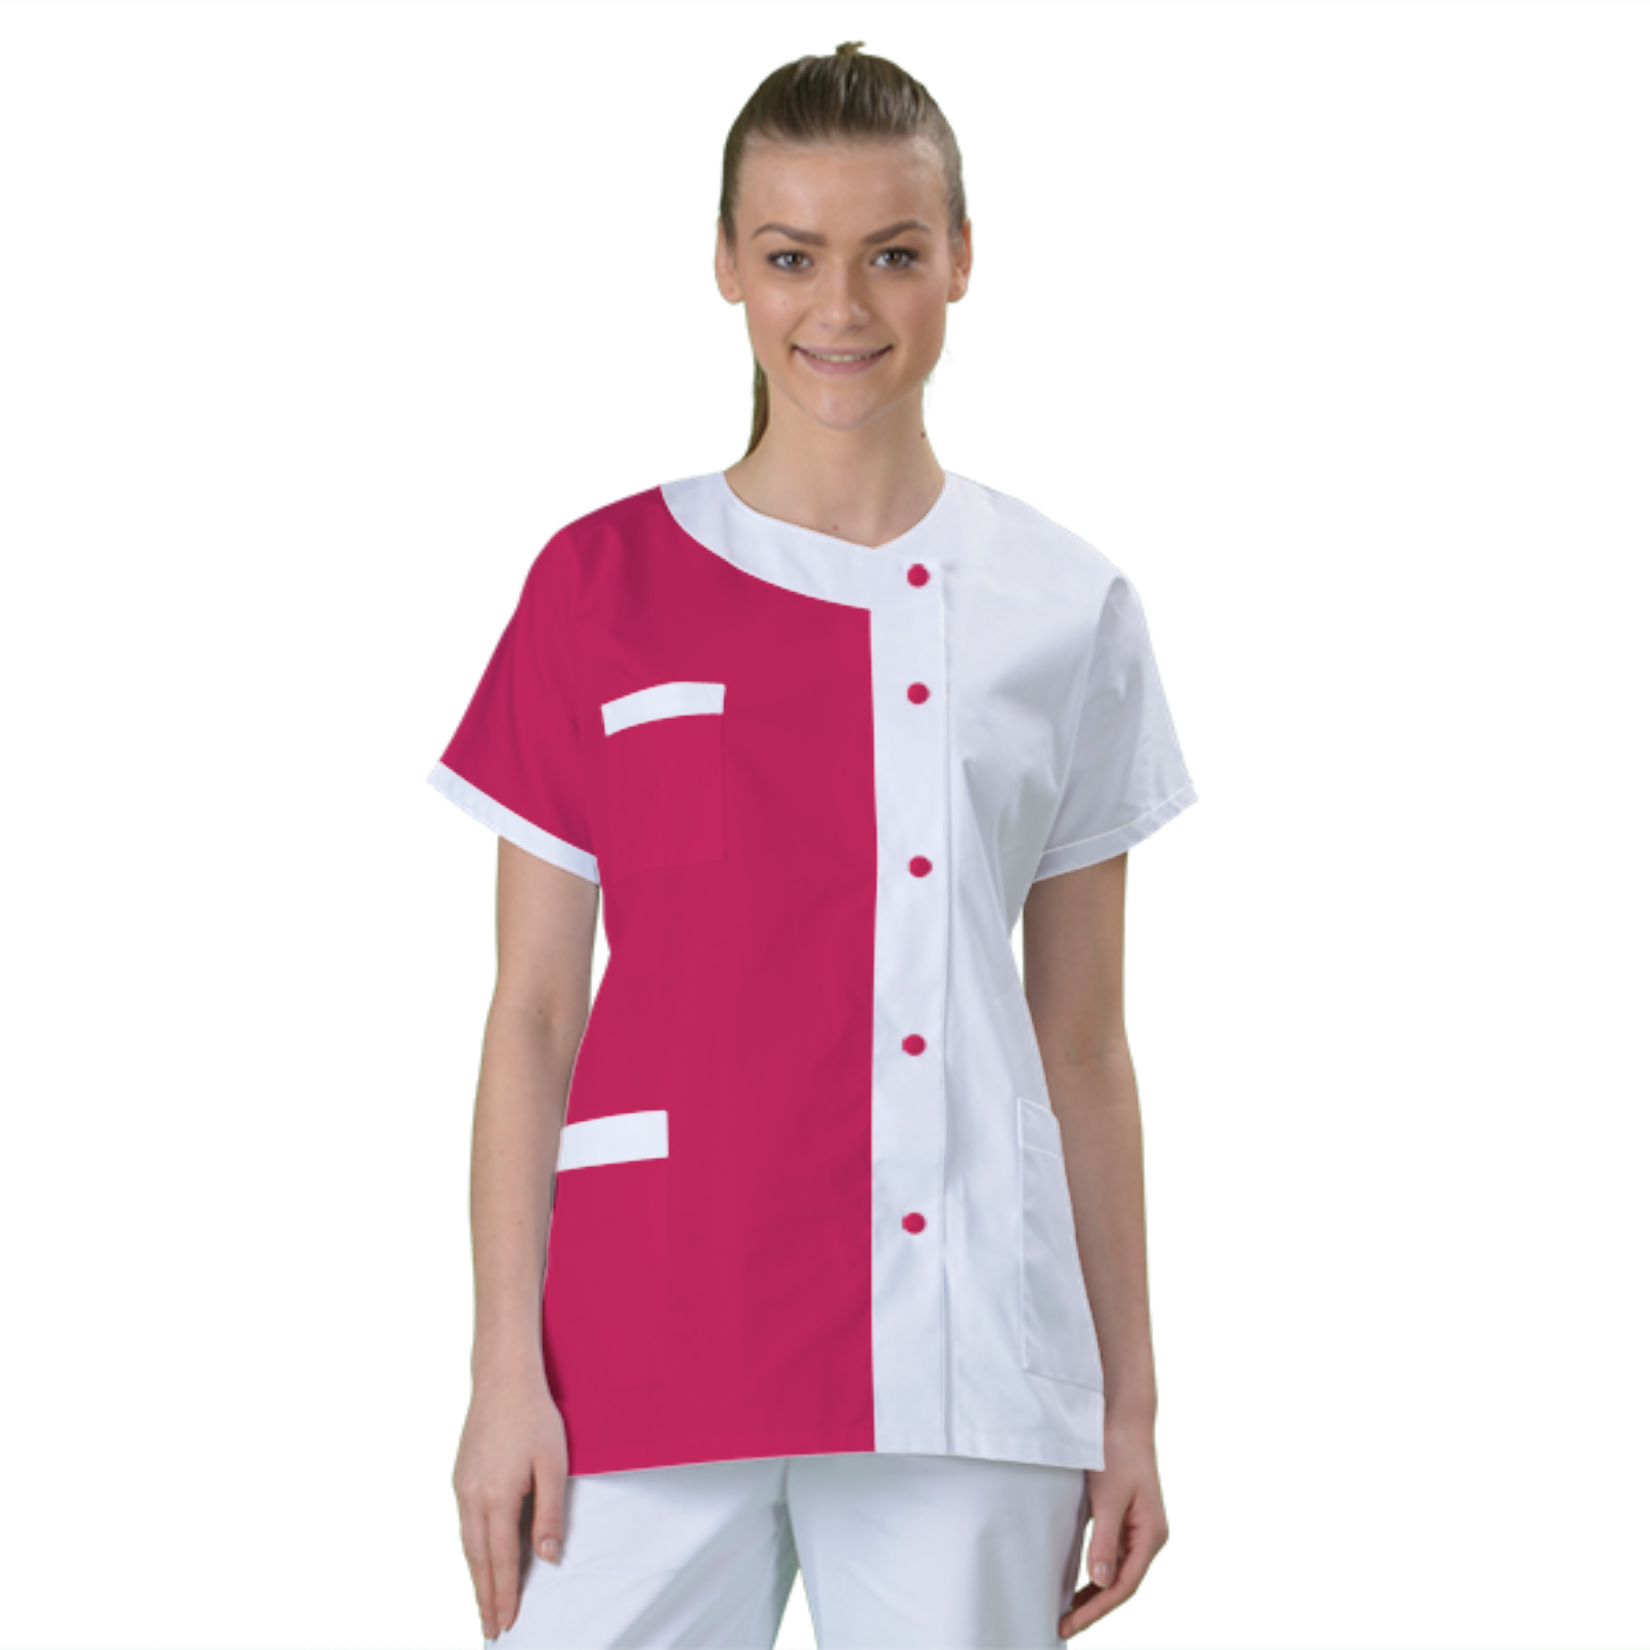 blouse-medicale-col-carre-a-personnaliser acheté - par Josia - le 27-08-2018